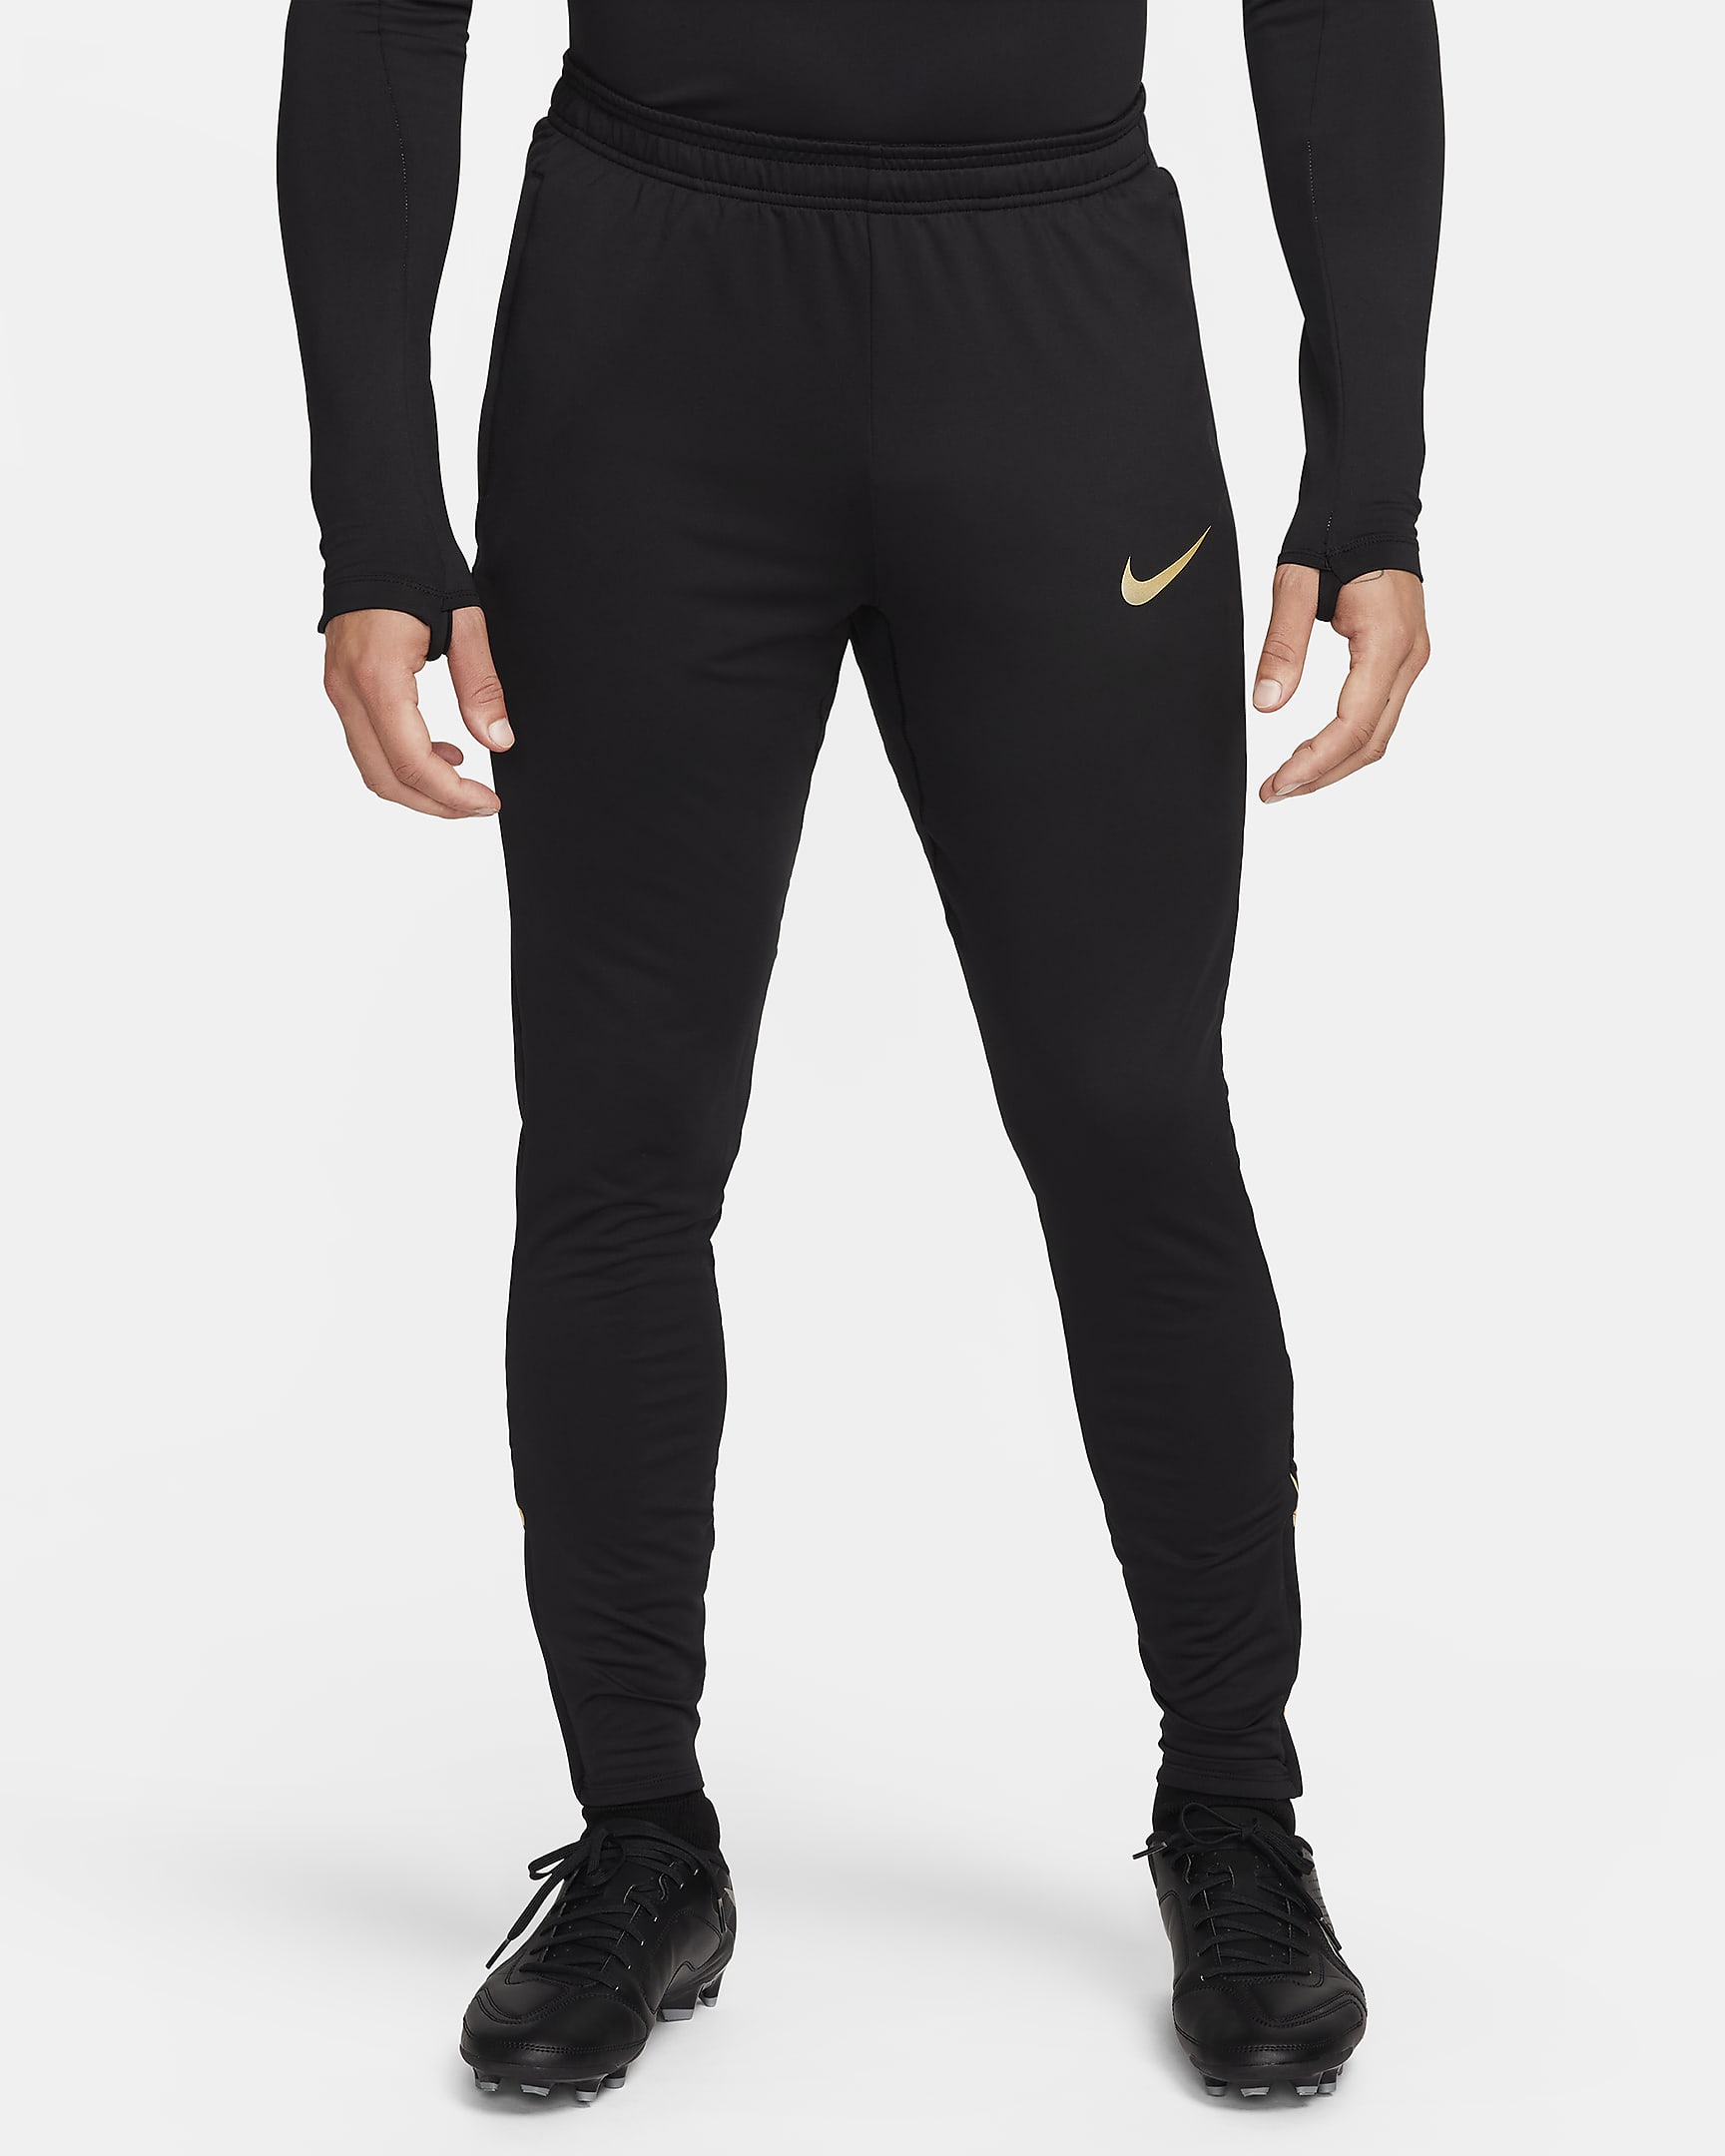 Nike Strike Dri-FIT voetbalbroek voor heren - Zwart/Zwart/Jersey Gold/Metallic Gold